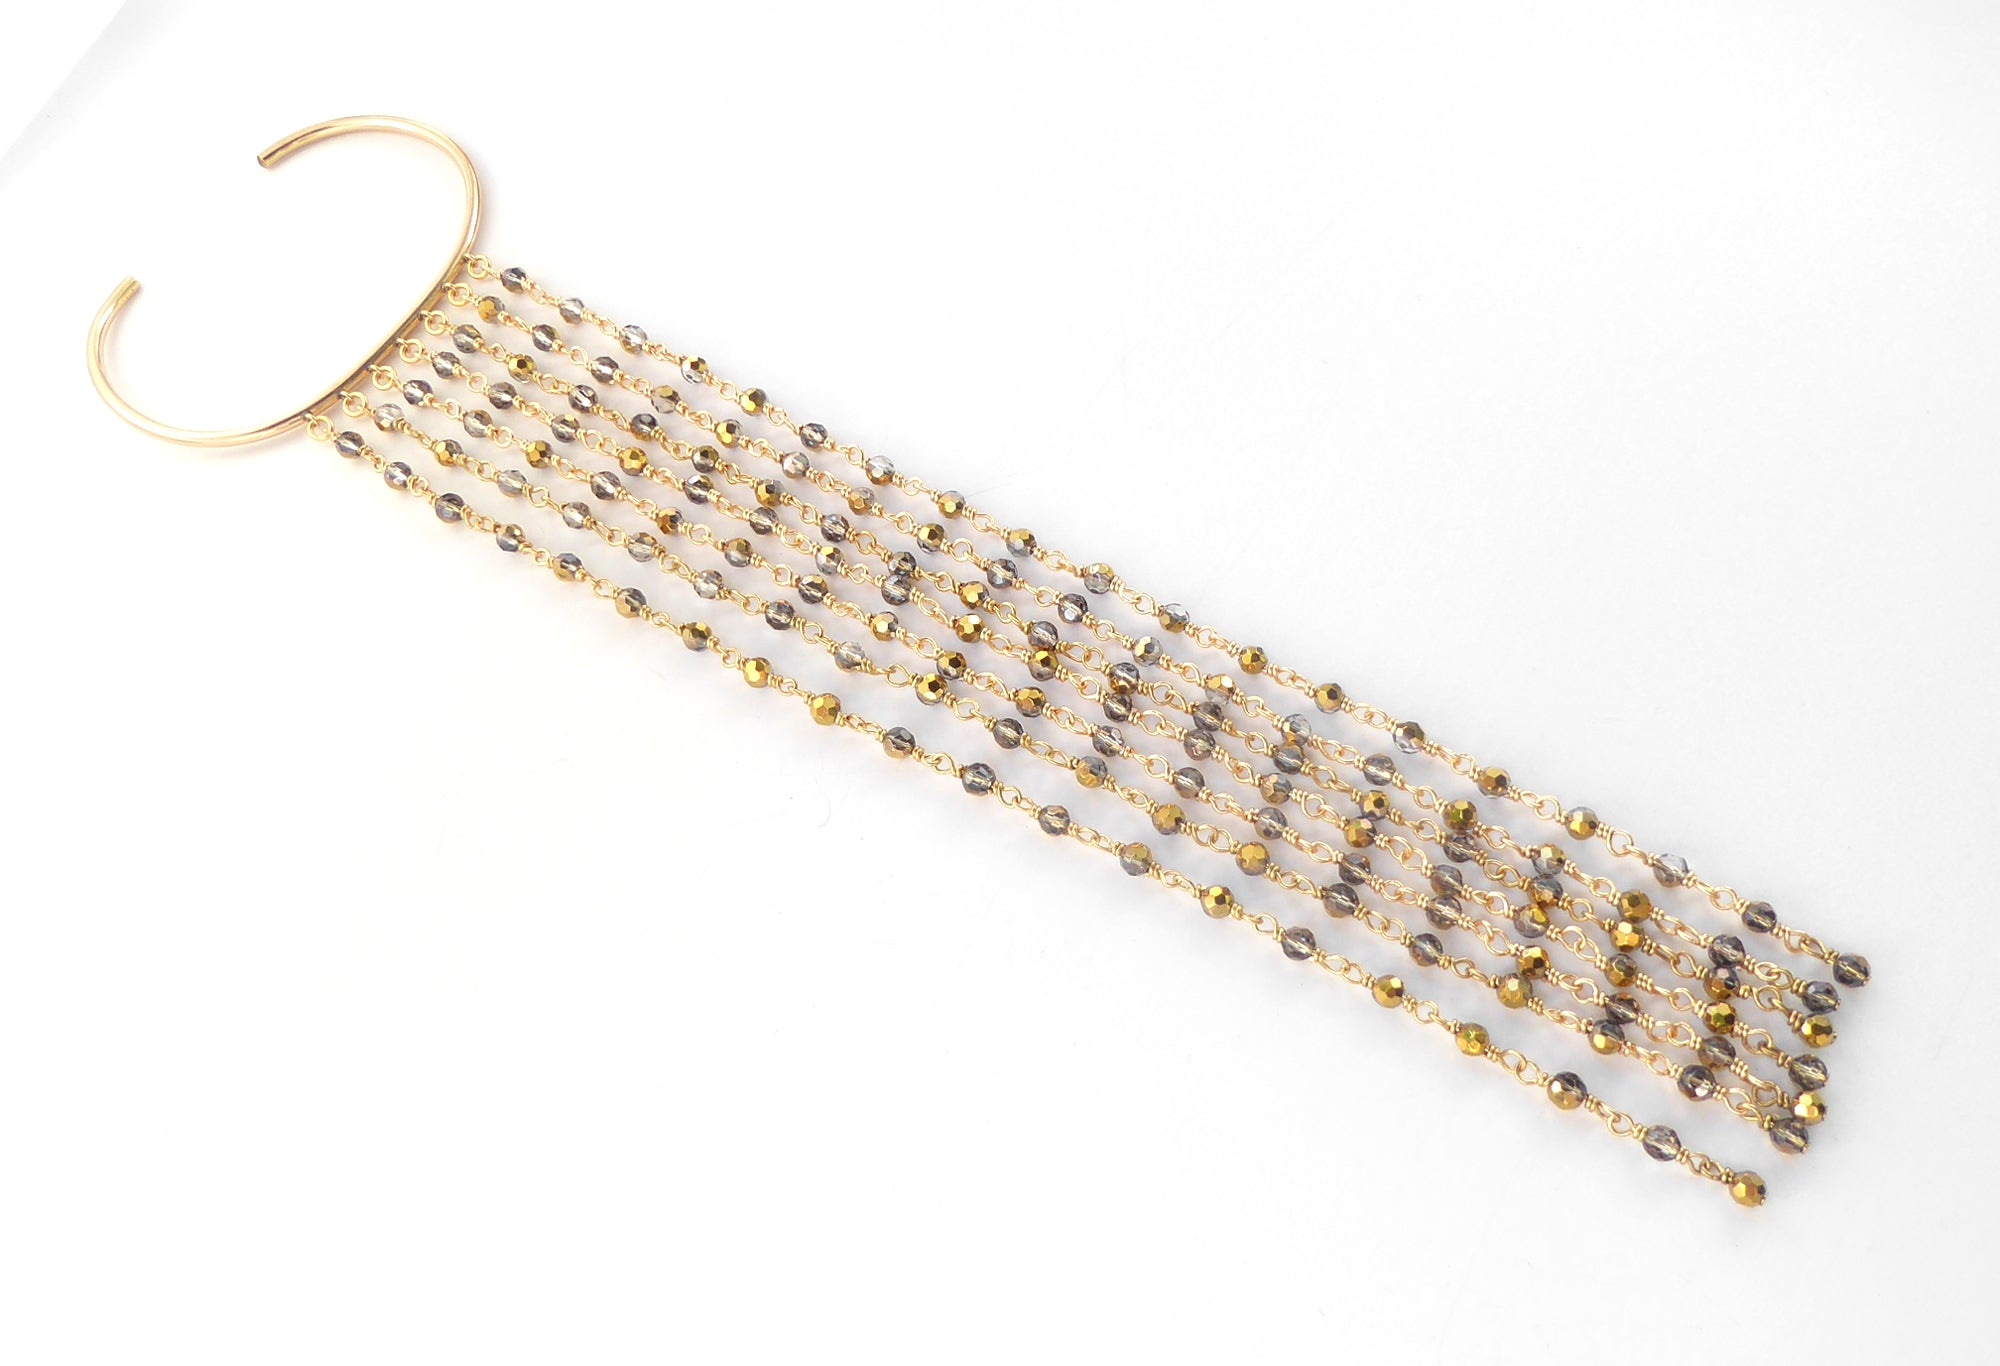 Gold filled crystal fringe bracelet by Jenny Dayco 2